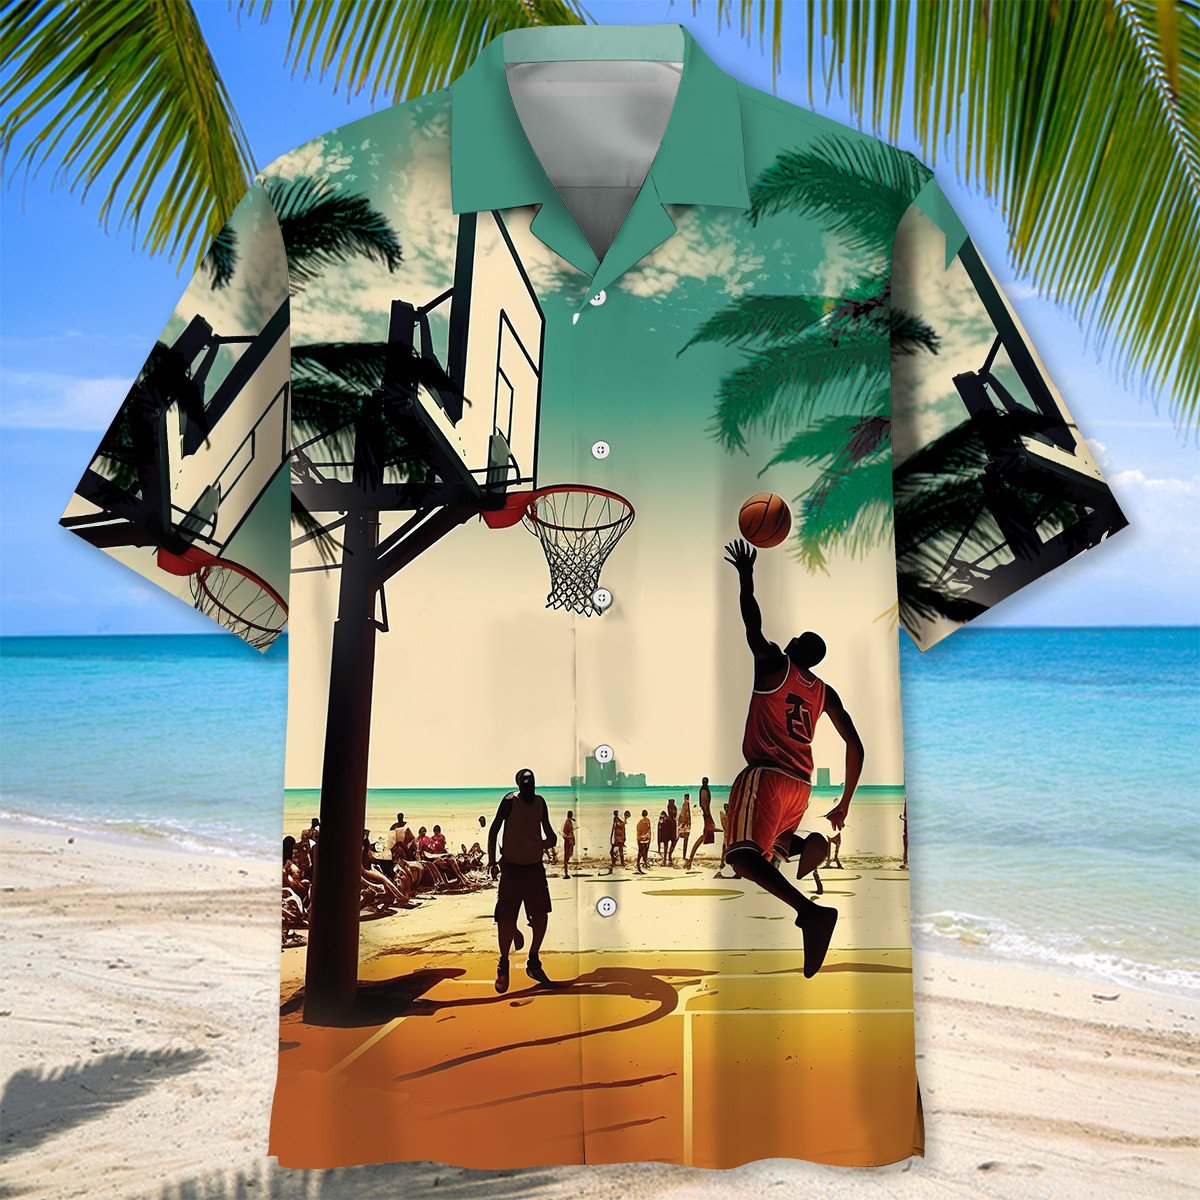 Basketball Beach Hawaiian Shirt/ Idea Shirt for Team Basketball Hawaii Beach Shirt